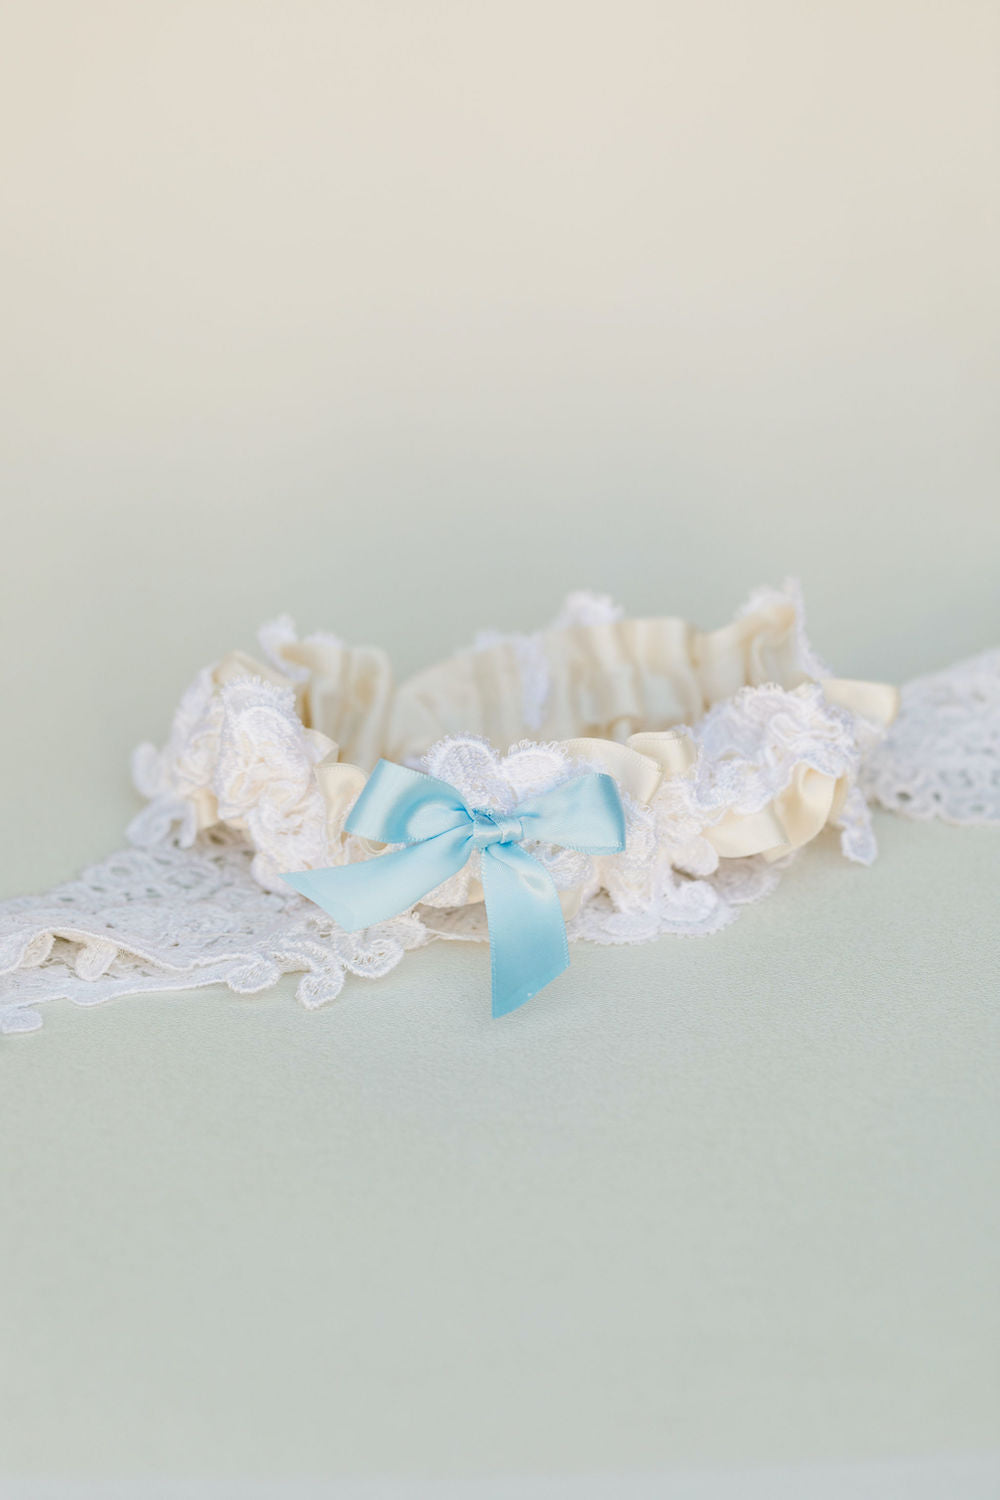 custom wedding garter handmade from bride's mother's wedding dress by expert garter designer, The Garter Girl